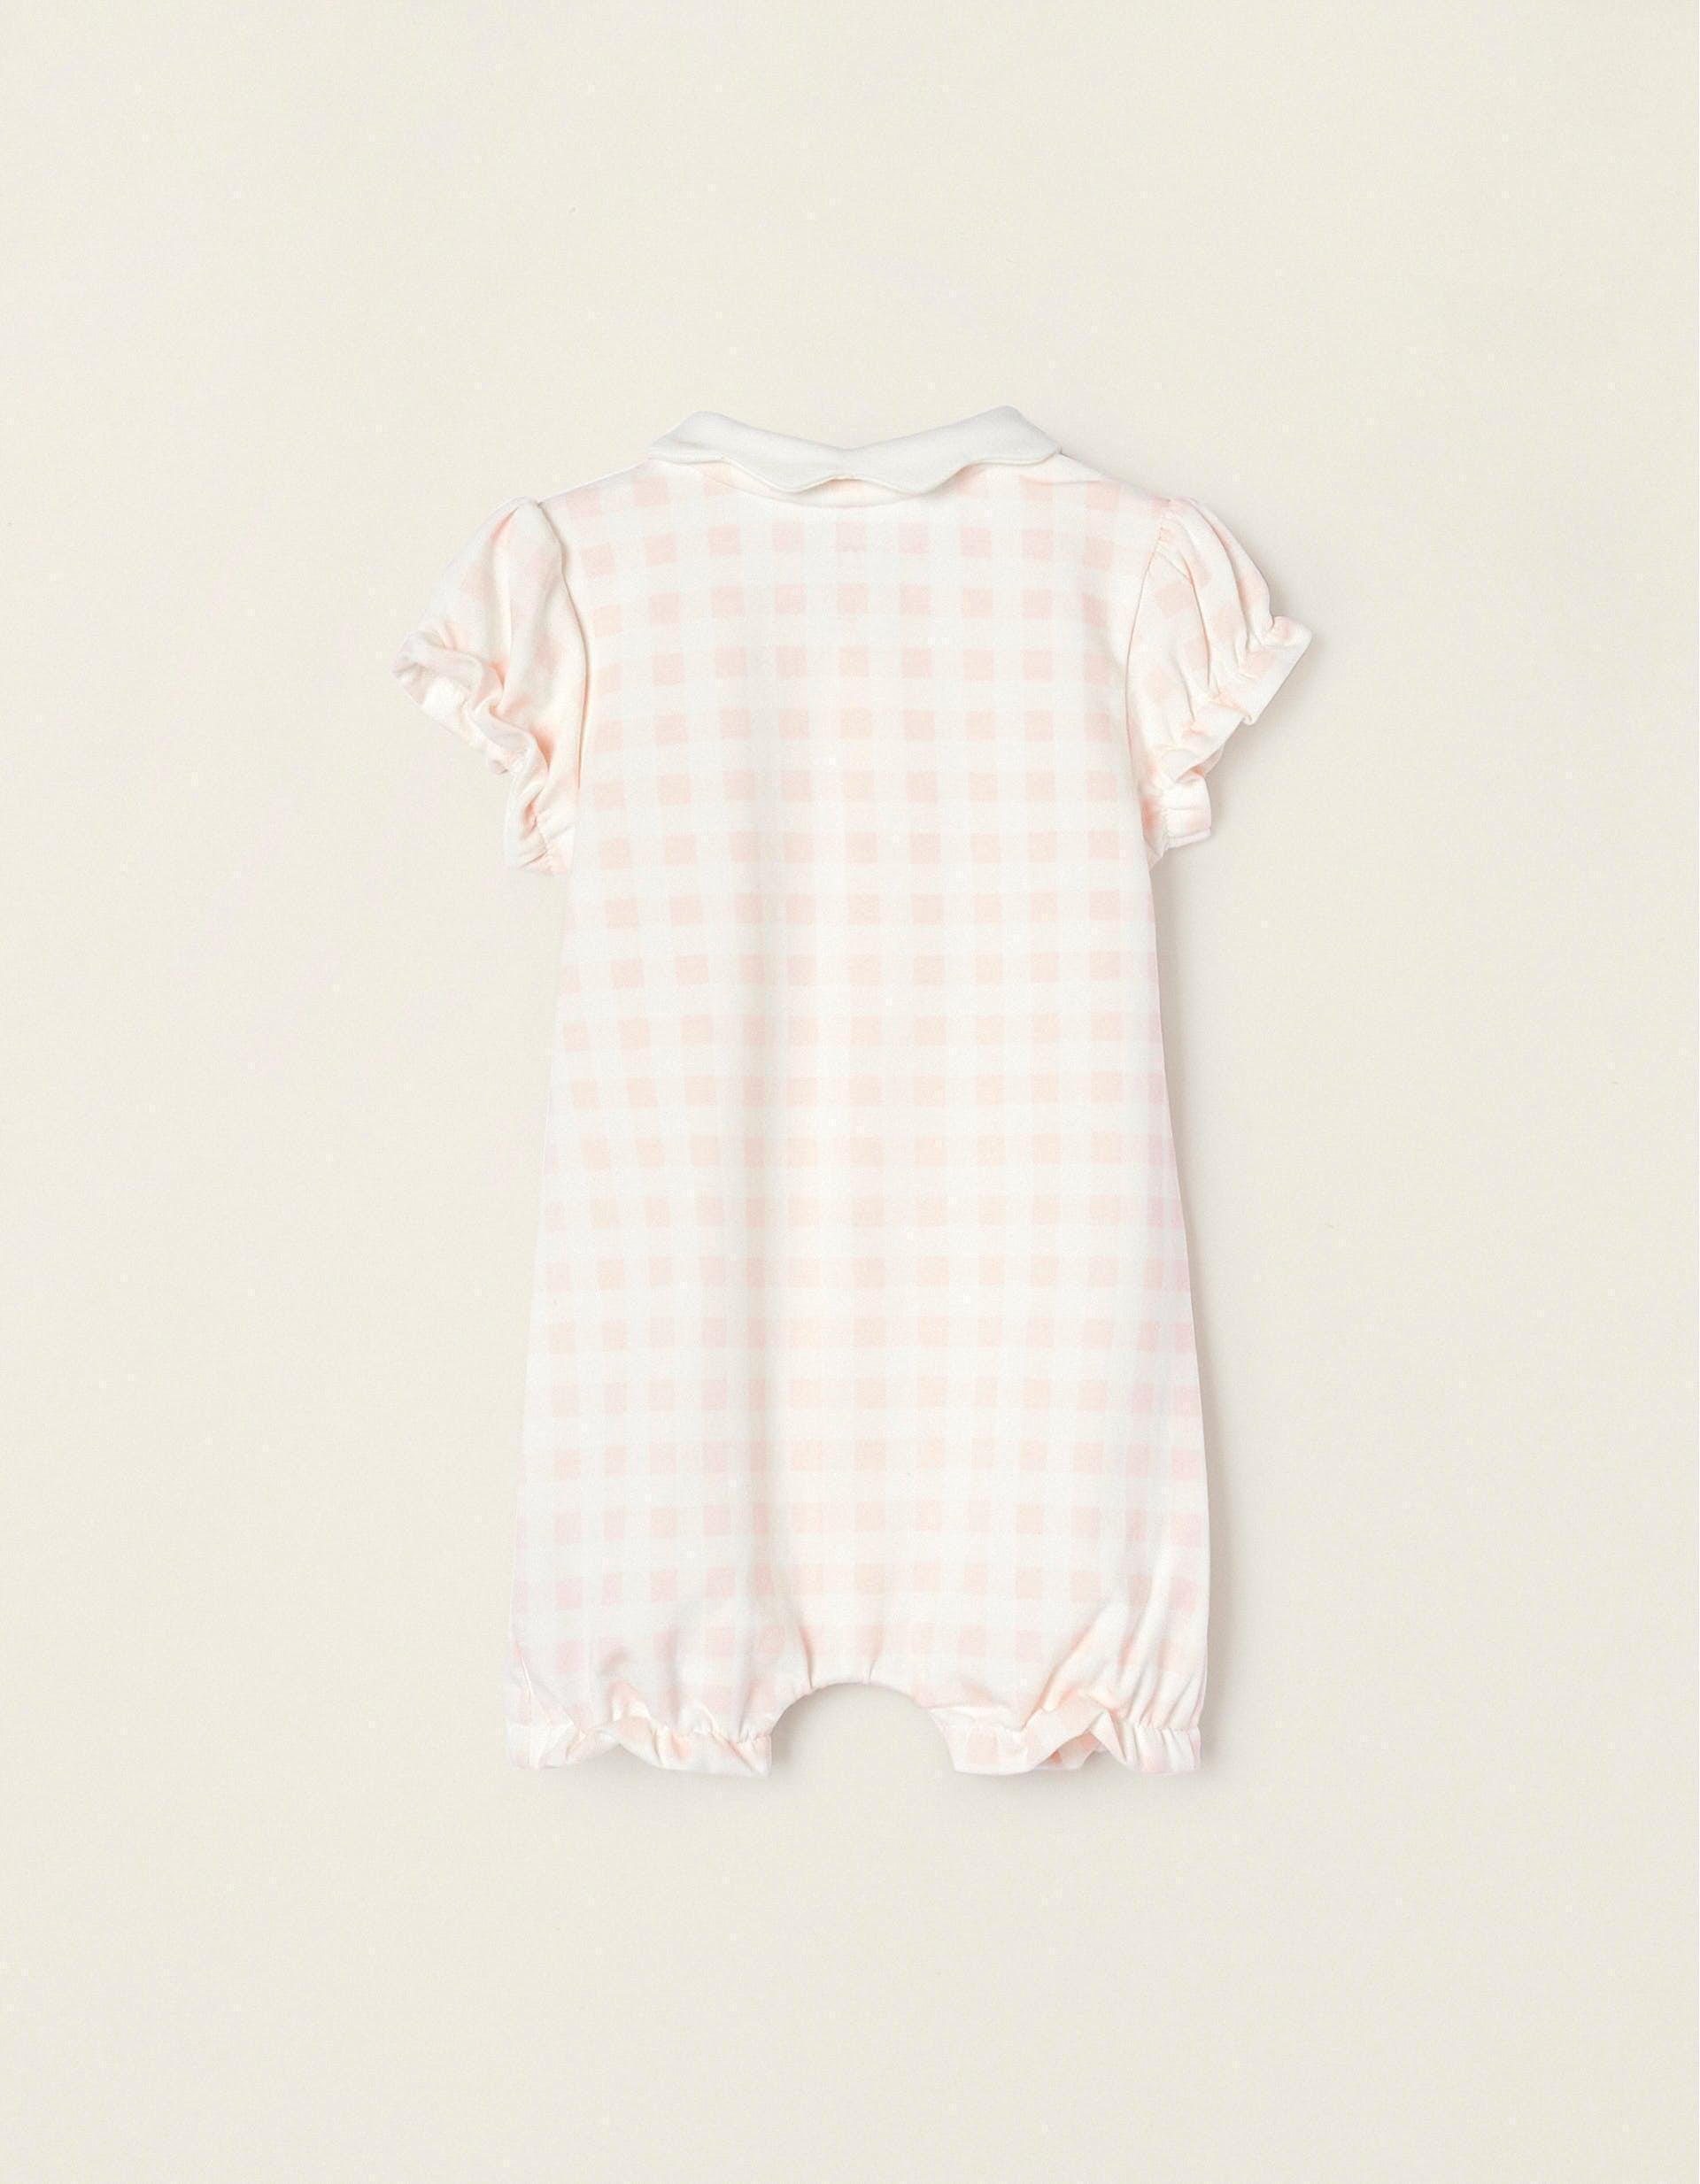 Zippy - Pink Plaid Jumpsuit, Baby Unisex